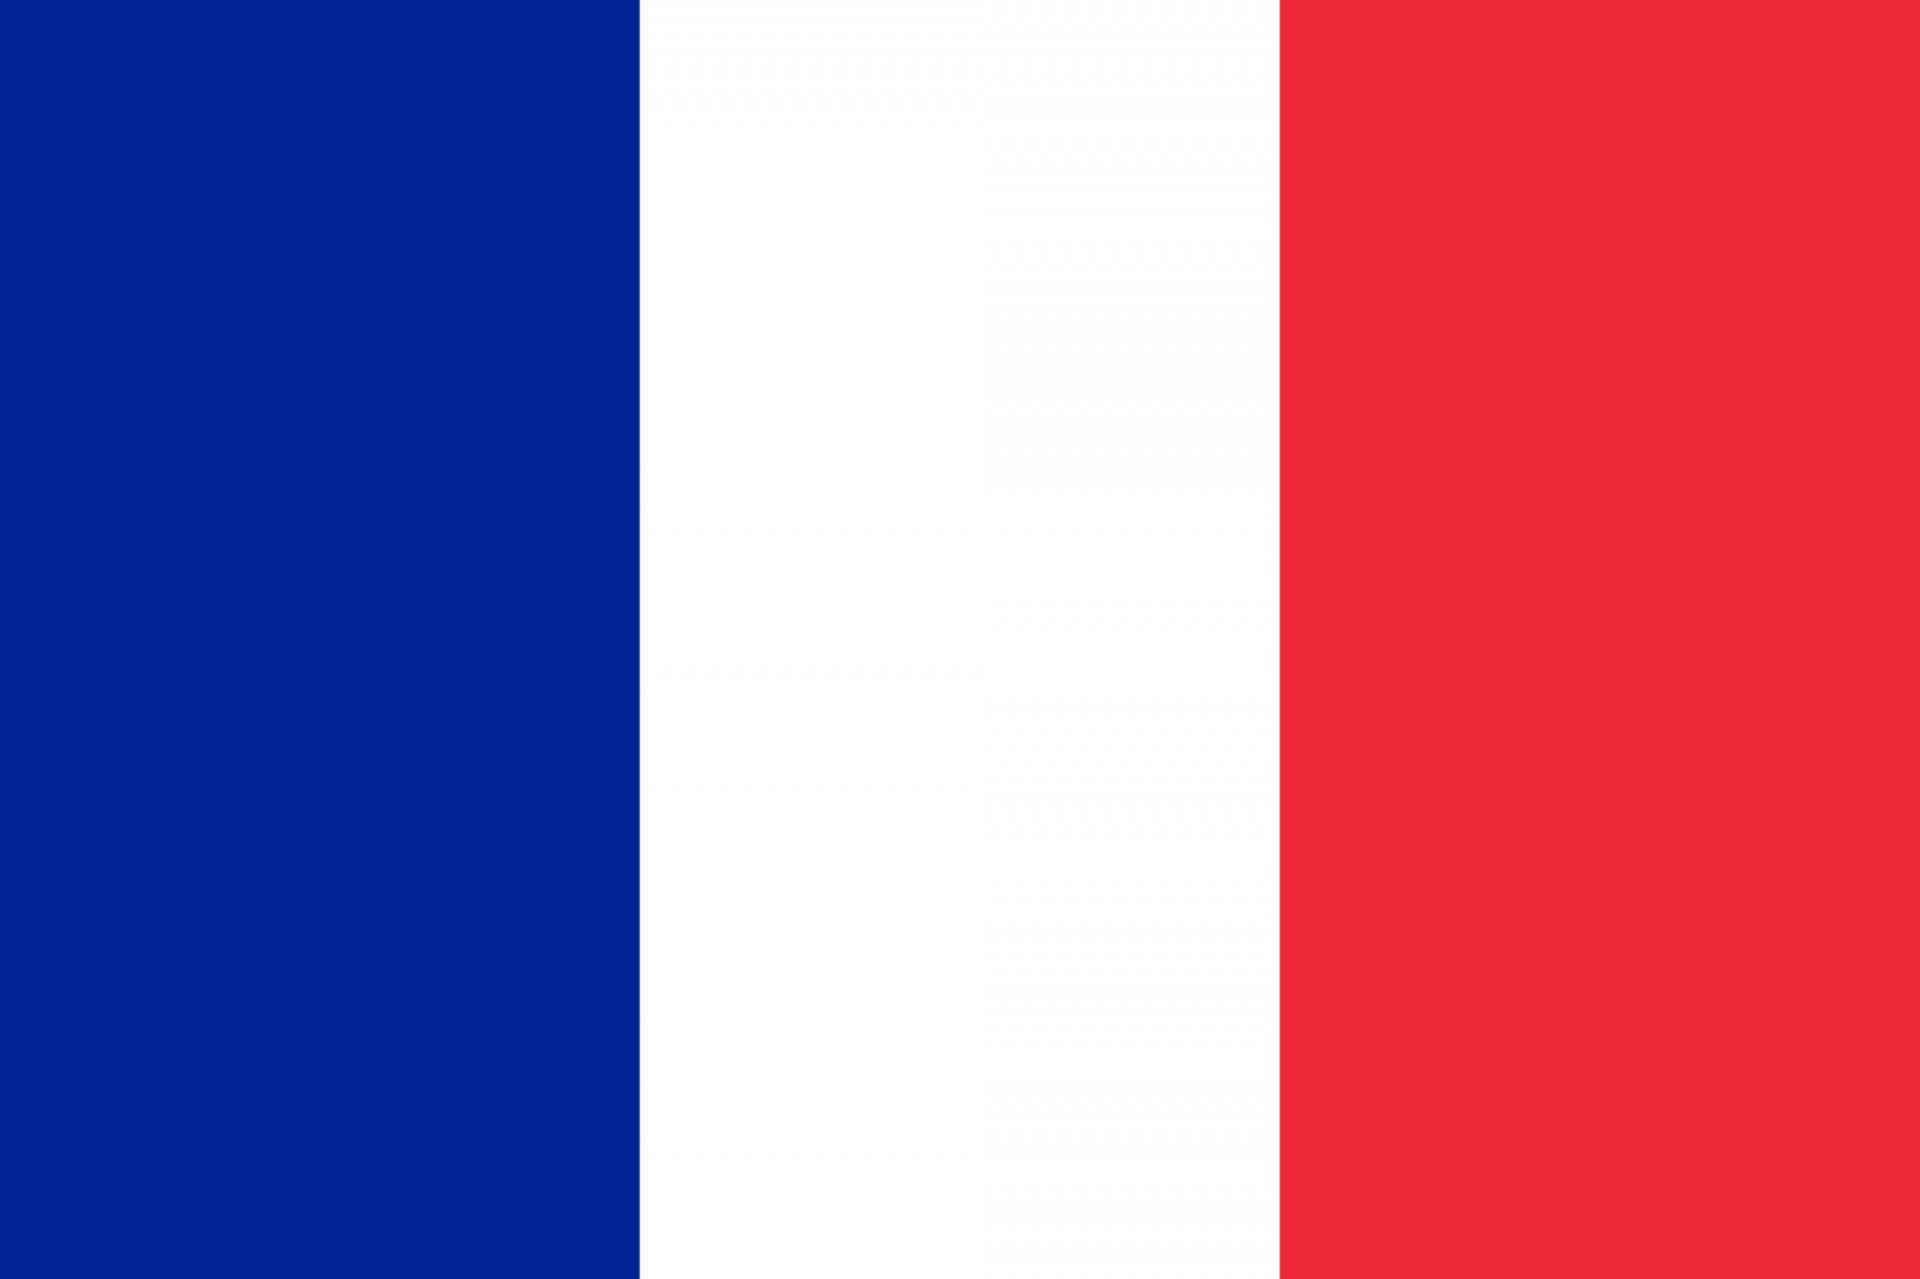 Vėliava,  France,  Vertikalus,  Juostelės,  Mėlynas,  Balta,  Raudona,  Emblema,  Dizainas,  Prancūzijos Vėliava